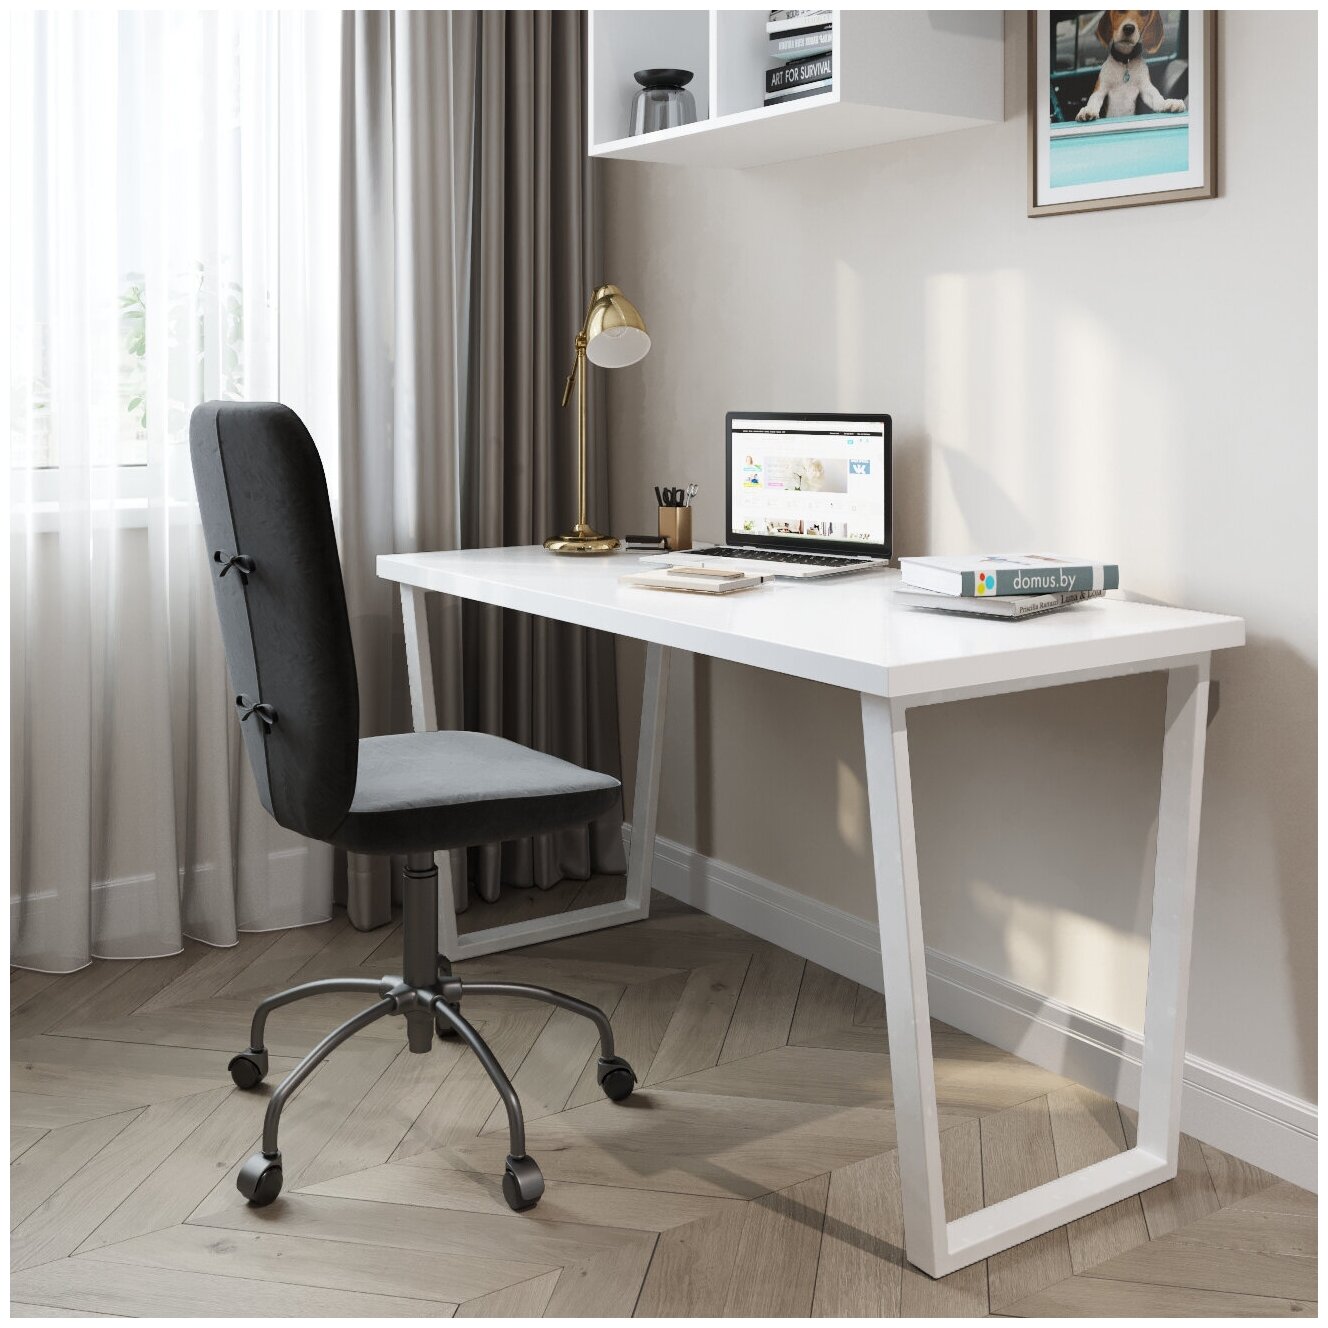 Письменный стол домус СП013 белый/металл белый (136 см)